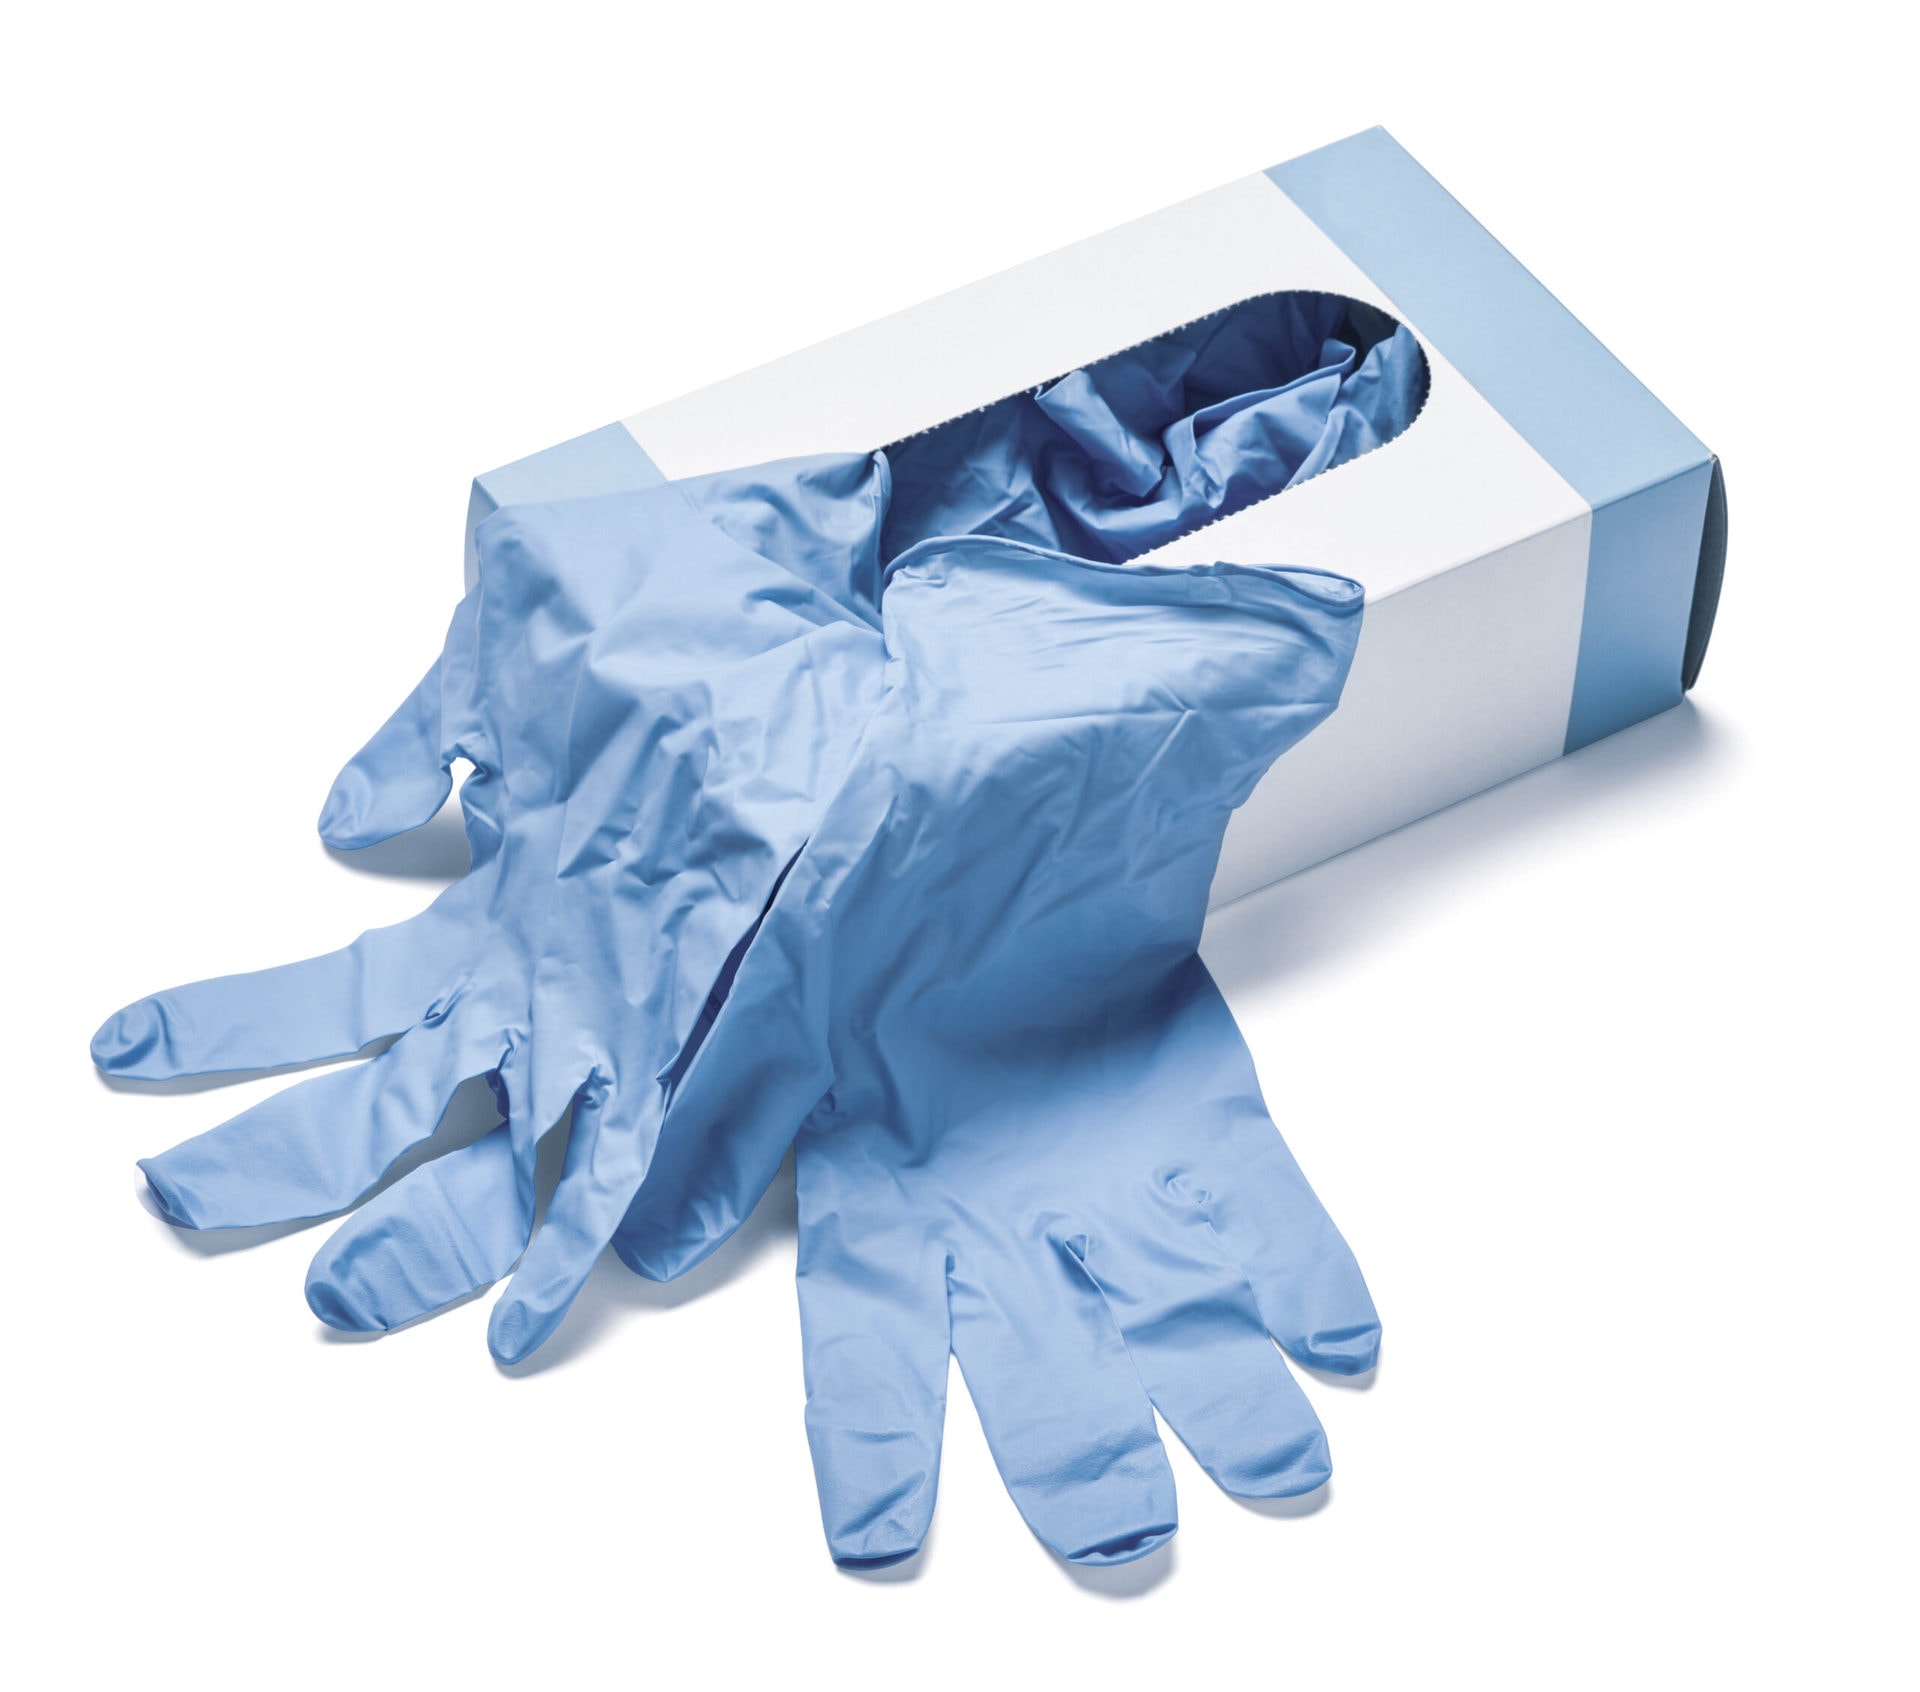 Medical Gloves Png